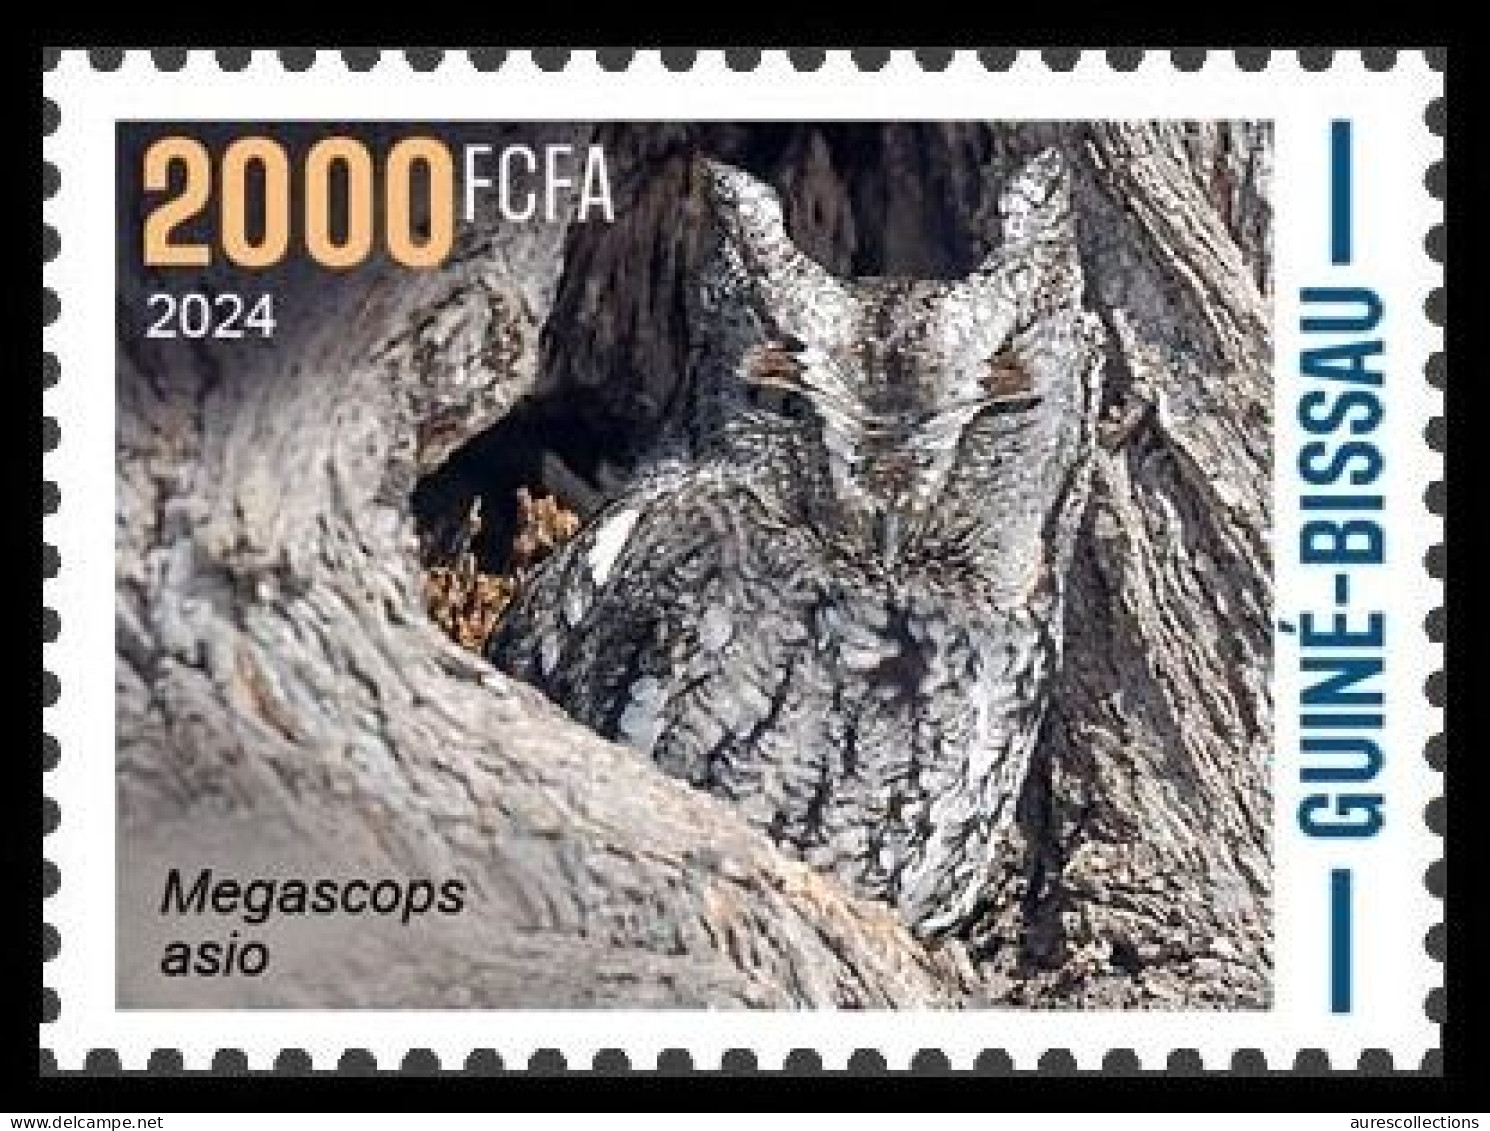 GUINEA BISSAU 2024 STAMP 1V - CAMOUFLAGE - OWLS OWL HIBOUX HIBOU BIRDS OISEAUX - MNH - Uilen